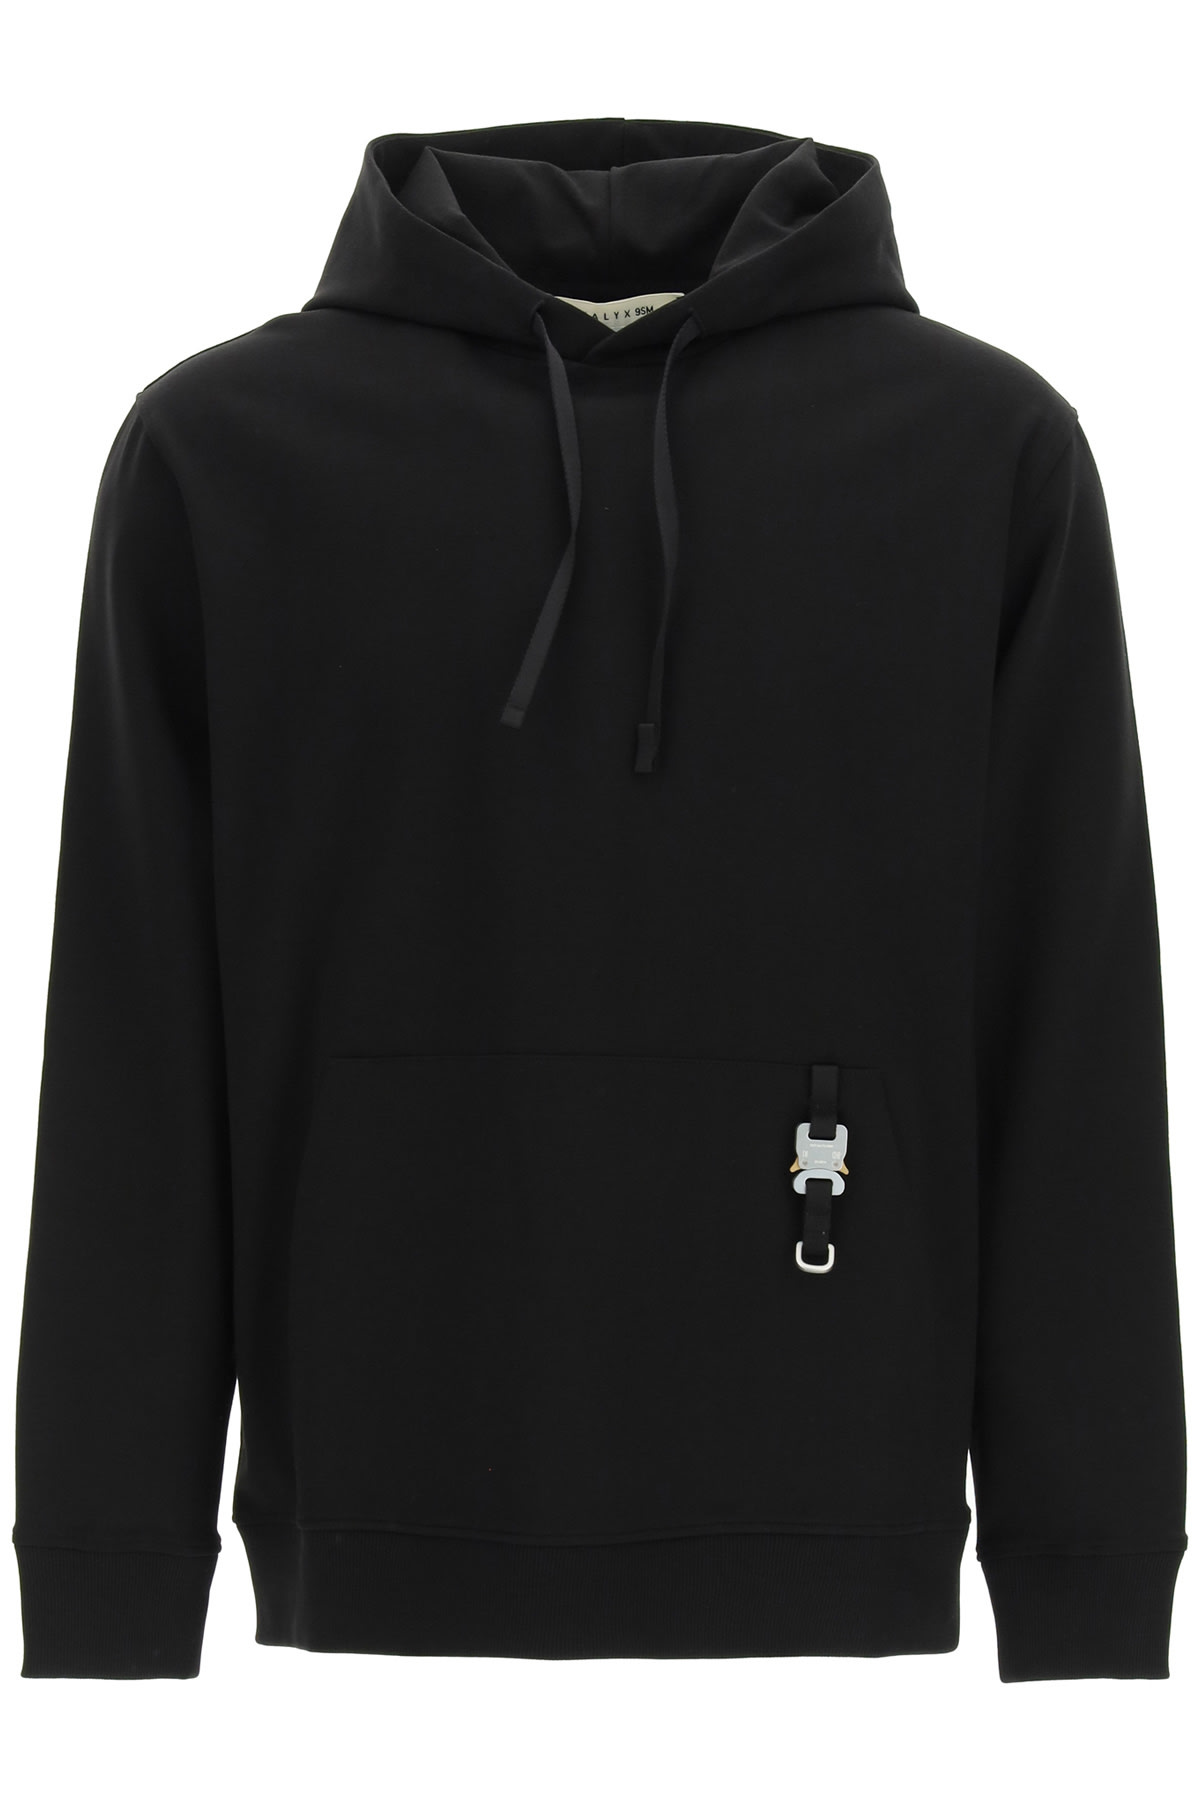 1017 ALYX 9SM Sweatshirt With Hood